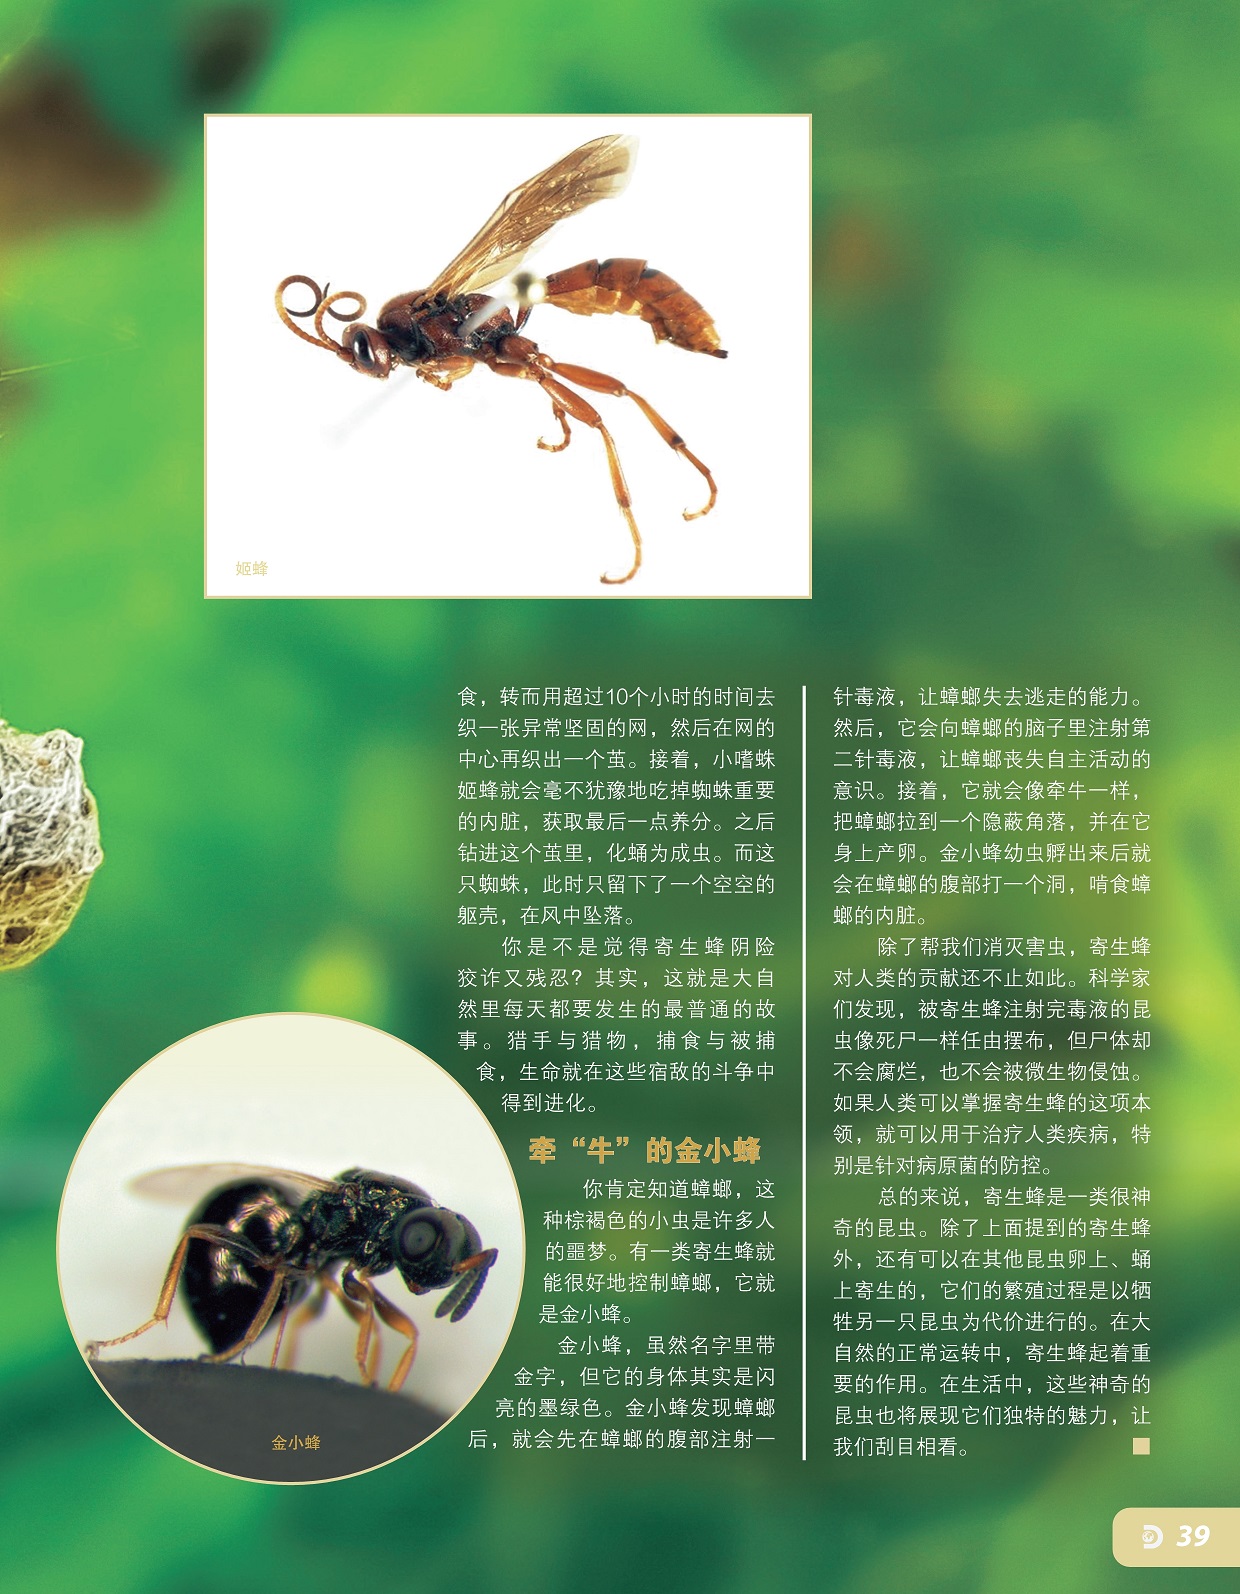 金小蜂能很好地控制蟑螂,寄生蜂是一类很神奇的昆虫